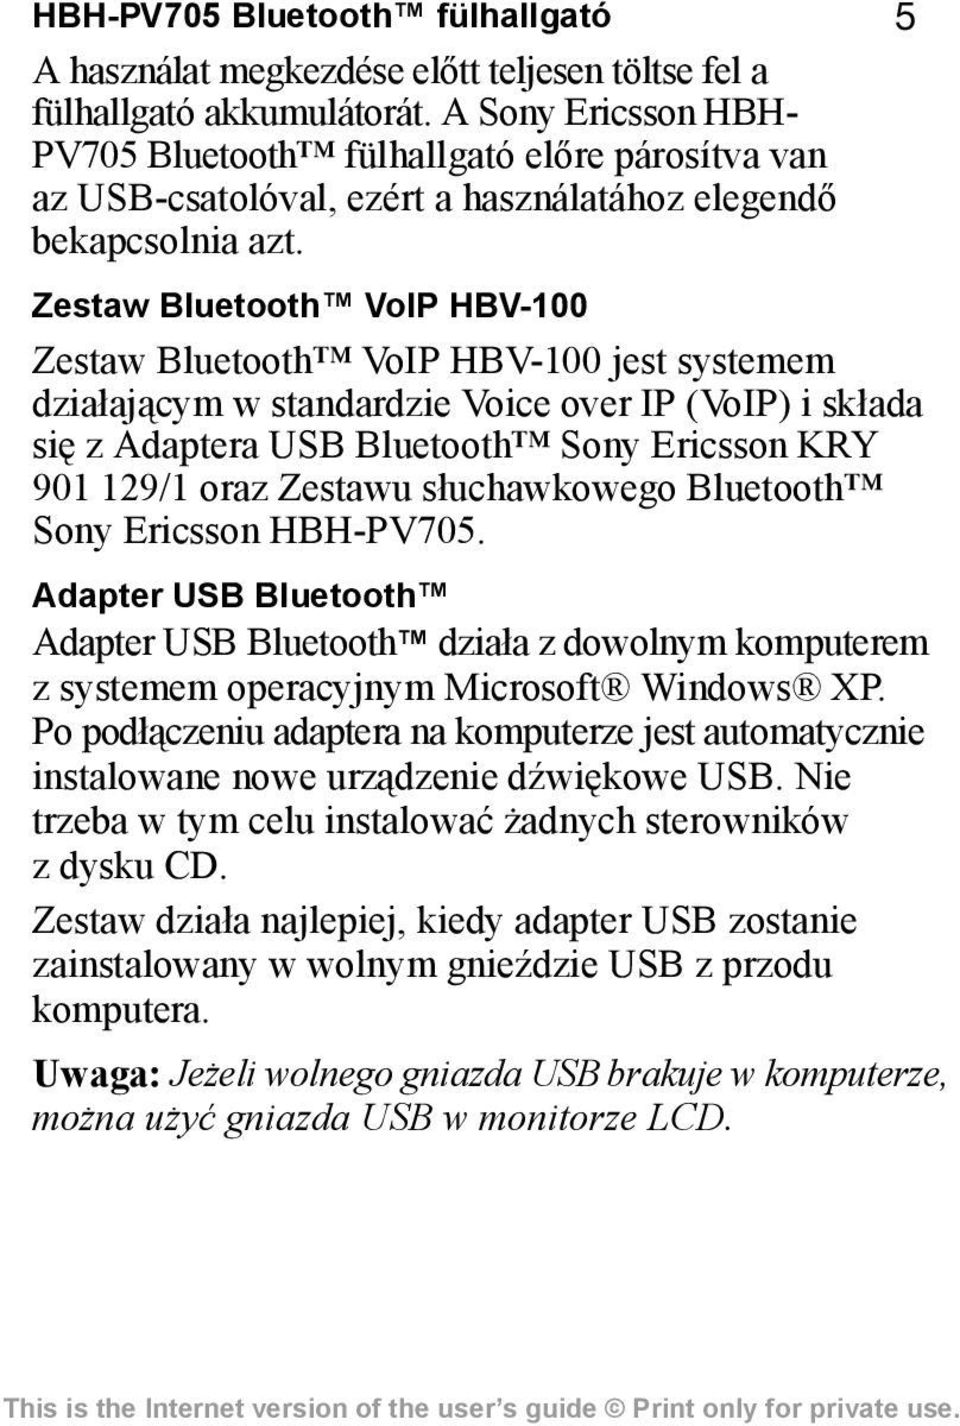 Zestaw Bluetooth VoIP HBV-100 Zestaw Bluetooth VoIP HBV-100 jest systemem działającym w standardzie Voice over IP (VoIP) i składa się z Adaptera USB Bluetooth Sony Ericsson KRY 901 129/1 oraz Zestawu